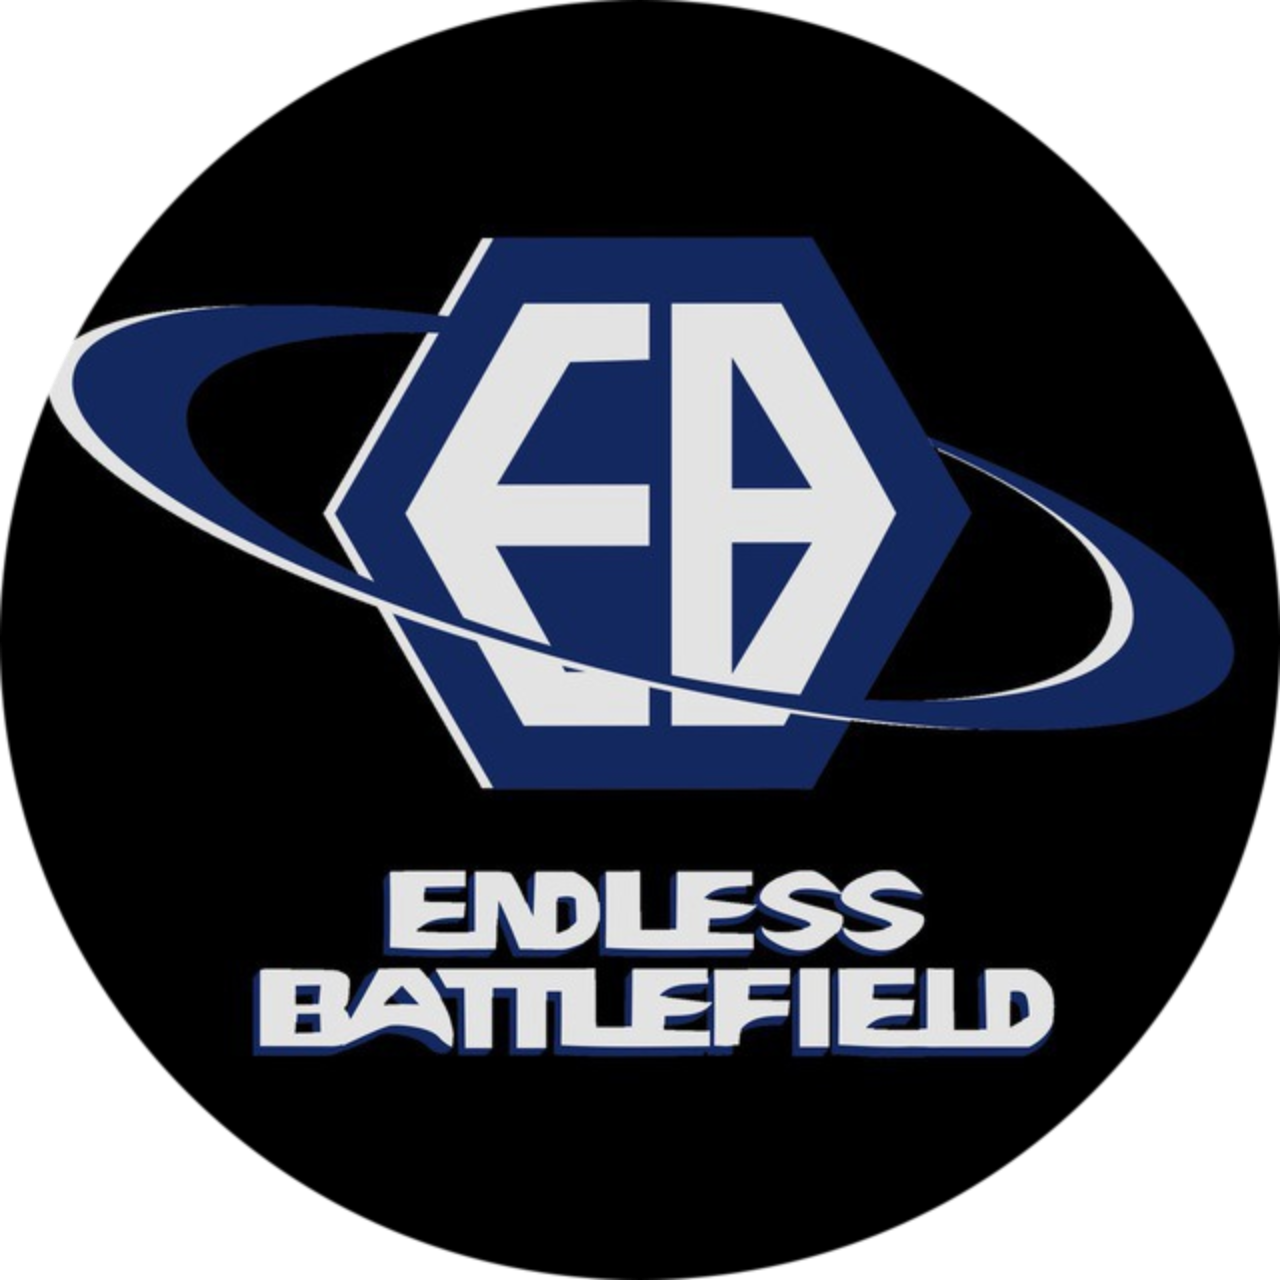 Endless Battlefield